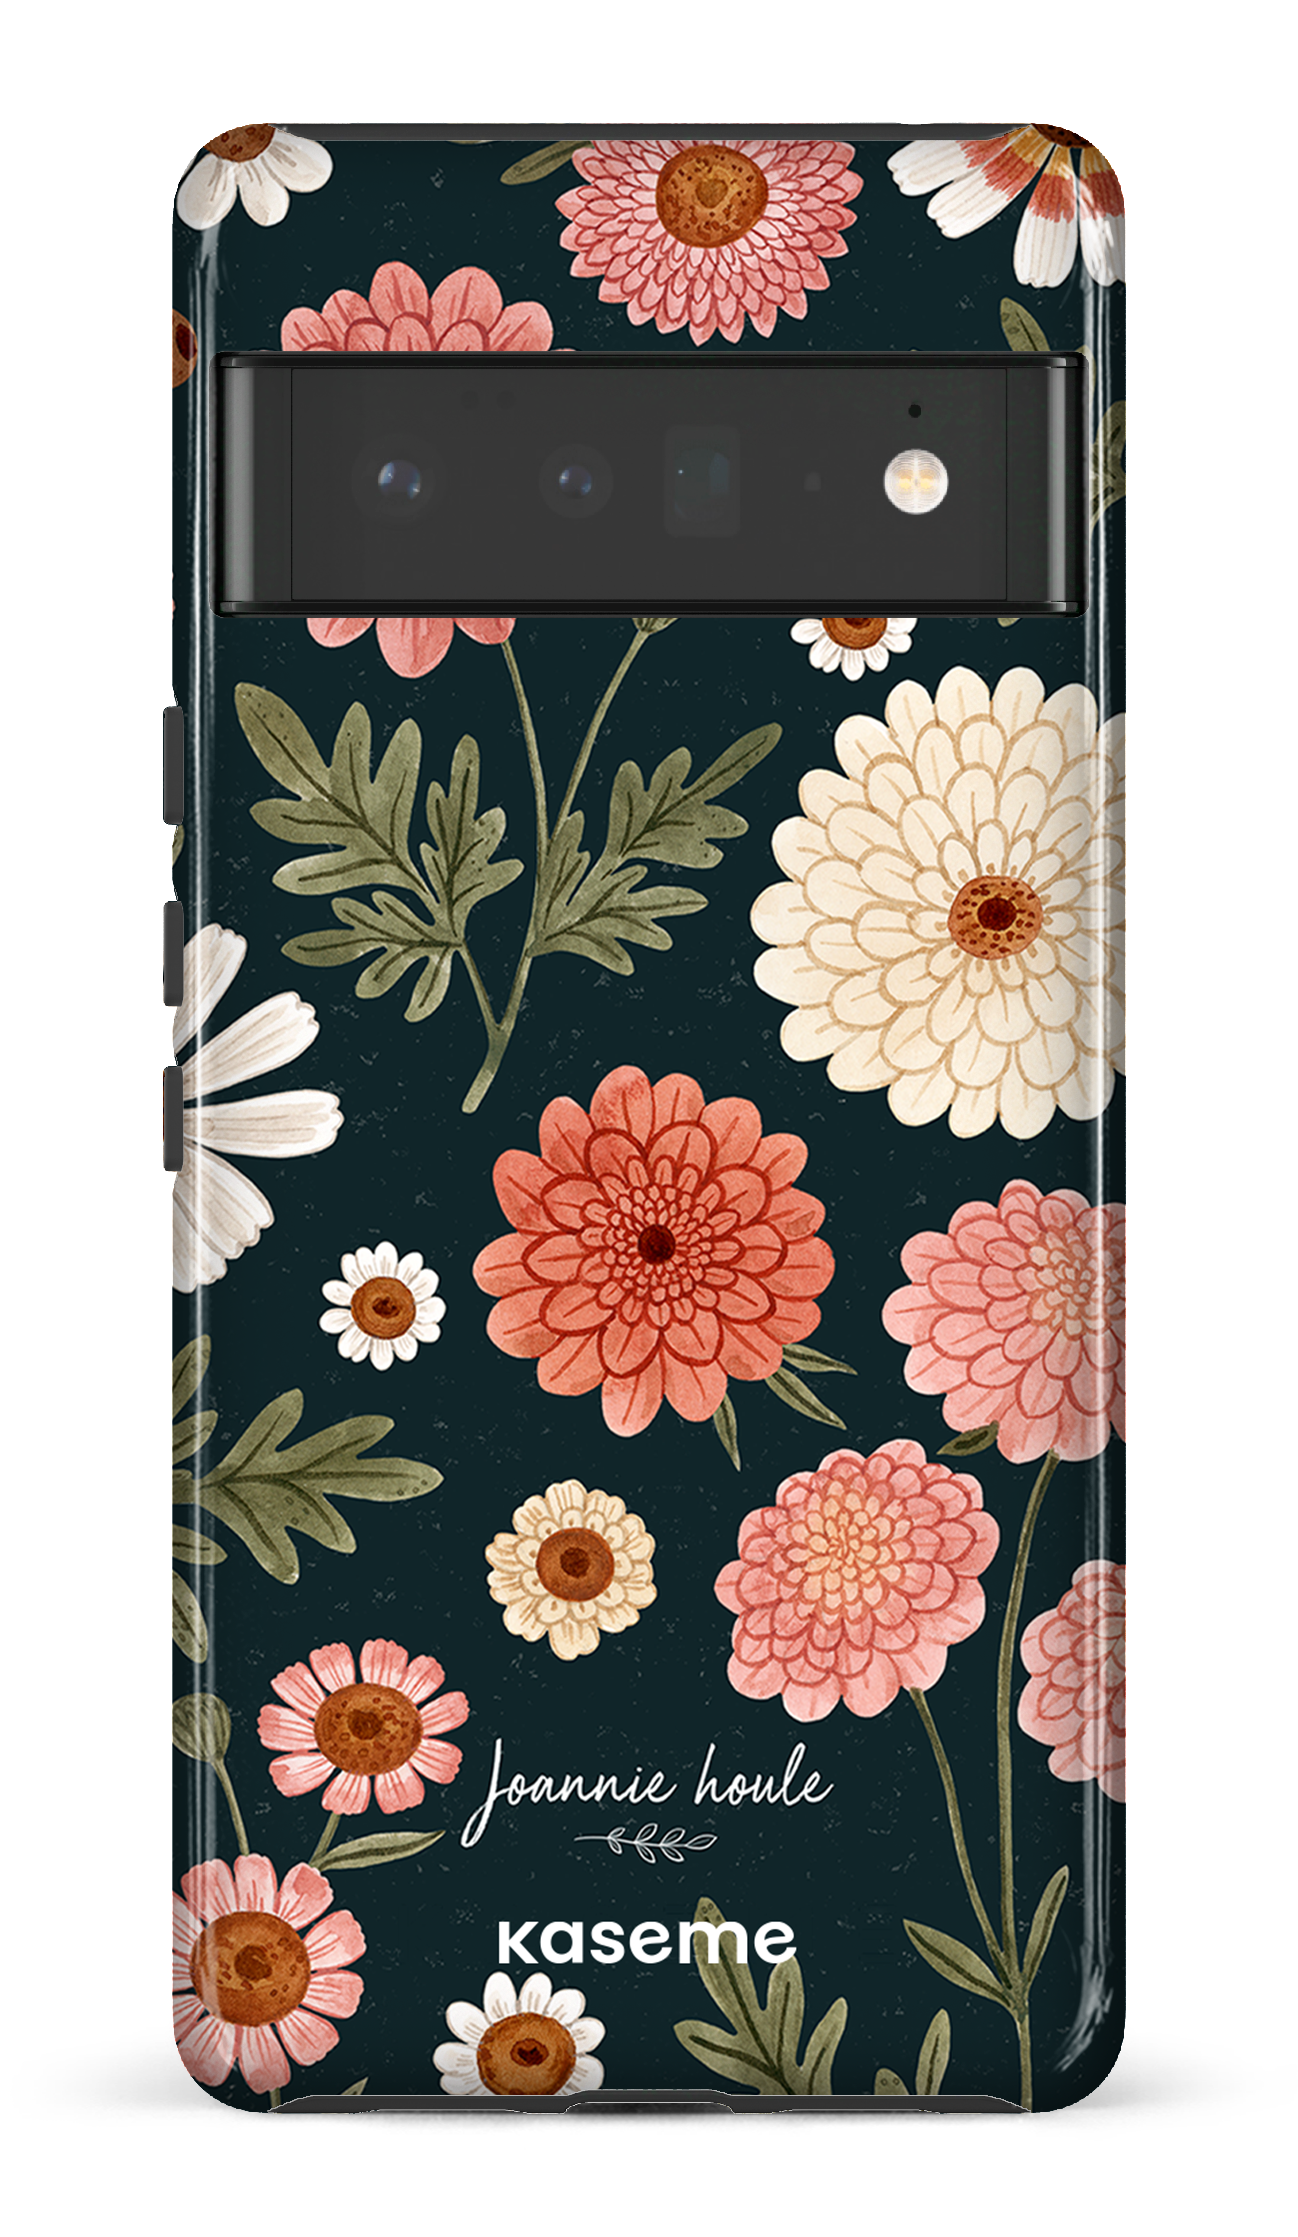 Chrysanthemums by Joannie Houle - Google Pixel 6 pro